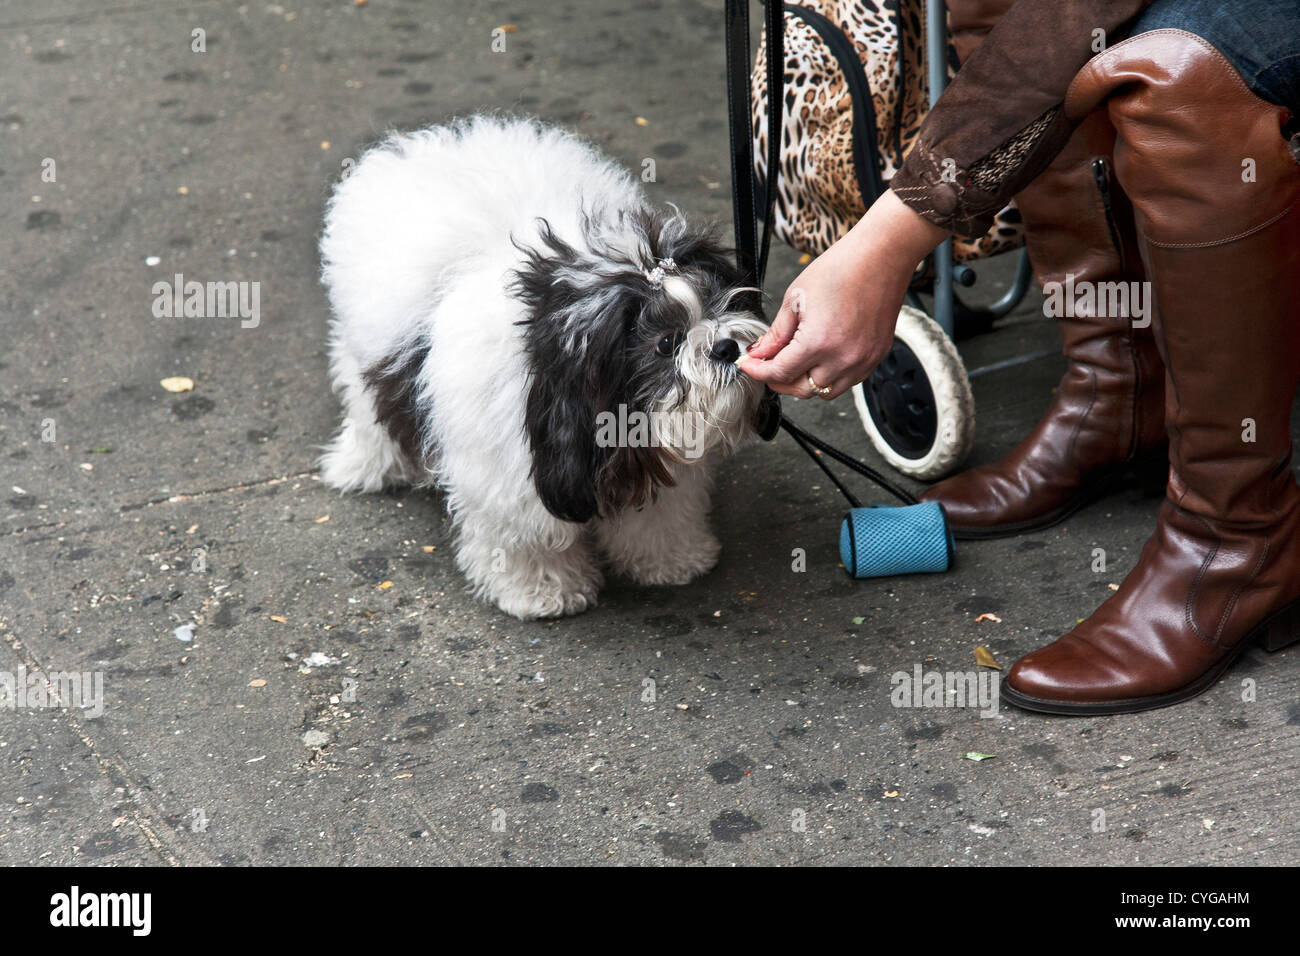 Frau trägt teure Leder Stiefel sitzen auf Bürgersteig Feeds Pizza Bissen,  ihre kleine flauschige schwarze & weißen Hund Manhattan Stockfotografie -  Alamy